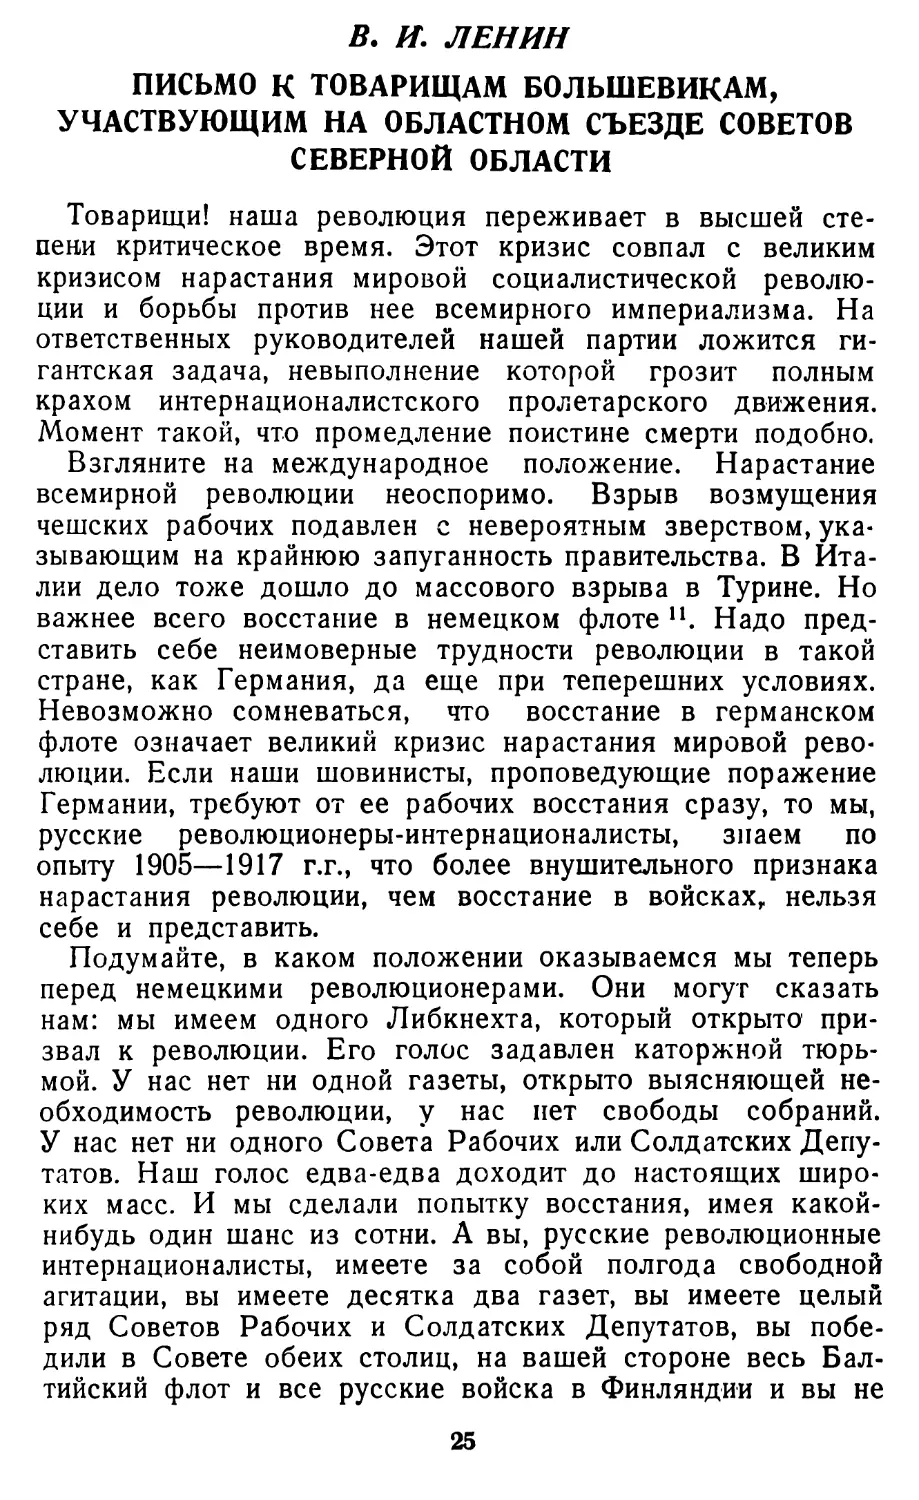 В. И. ЛЕНИН. Письмо к товарищам большевикам, участвующим на областном съезде Советов Северной области.